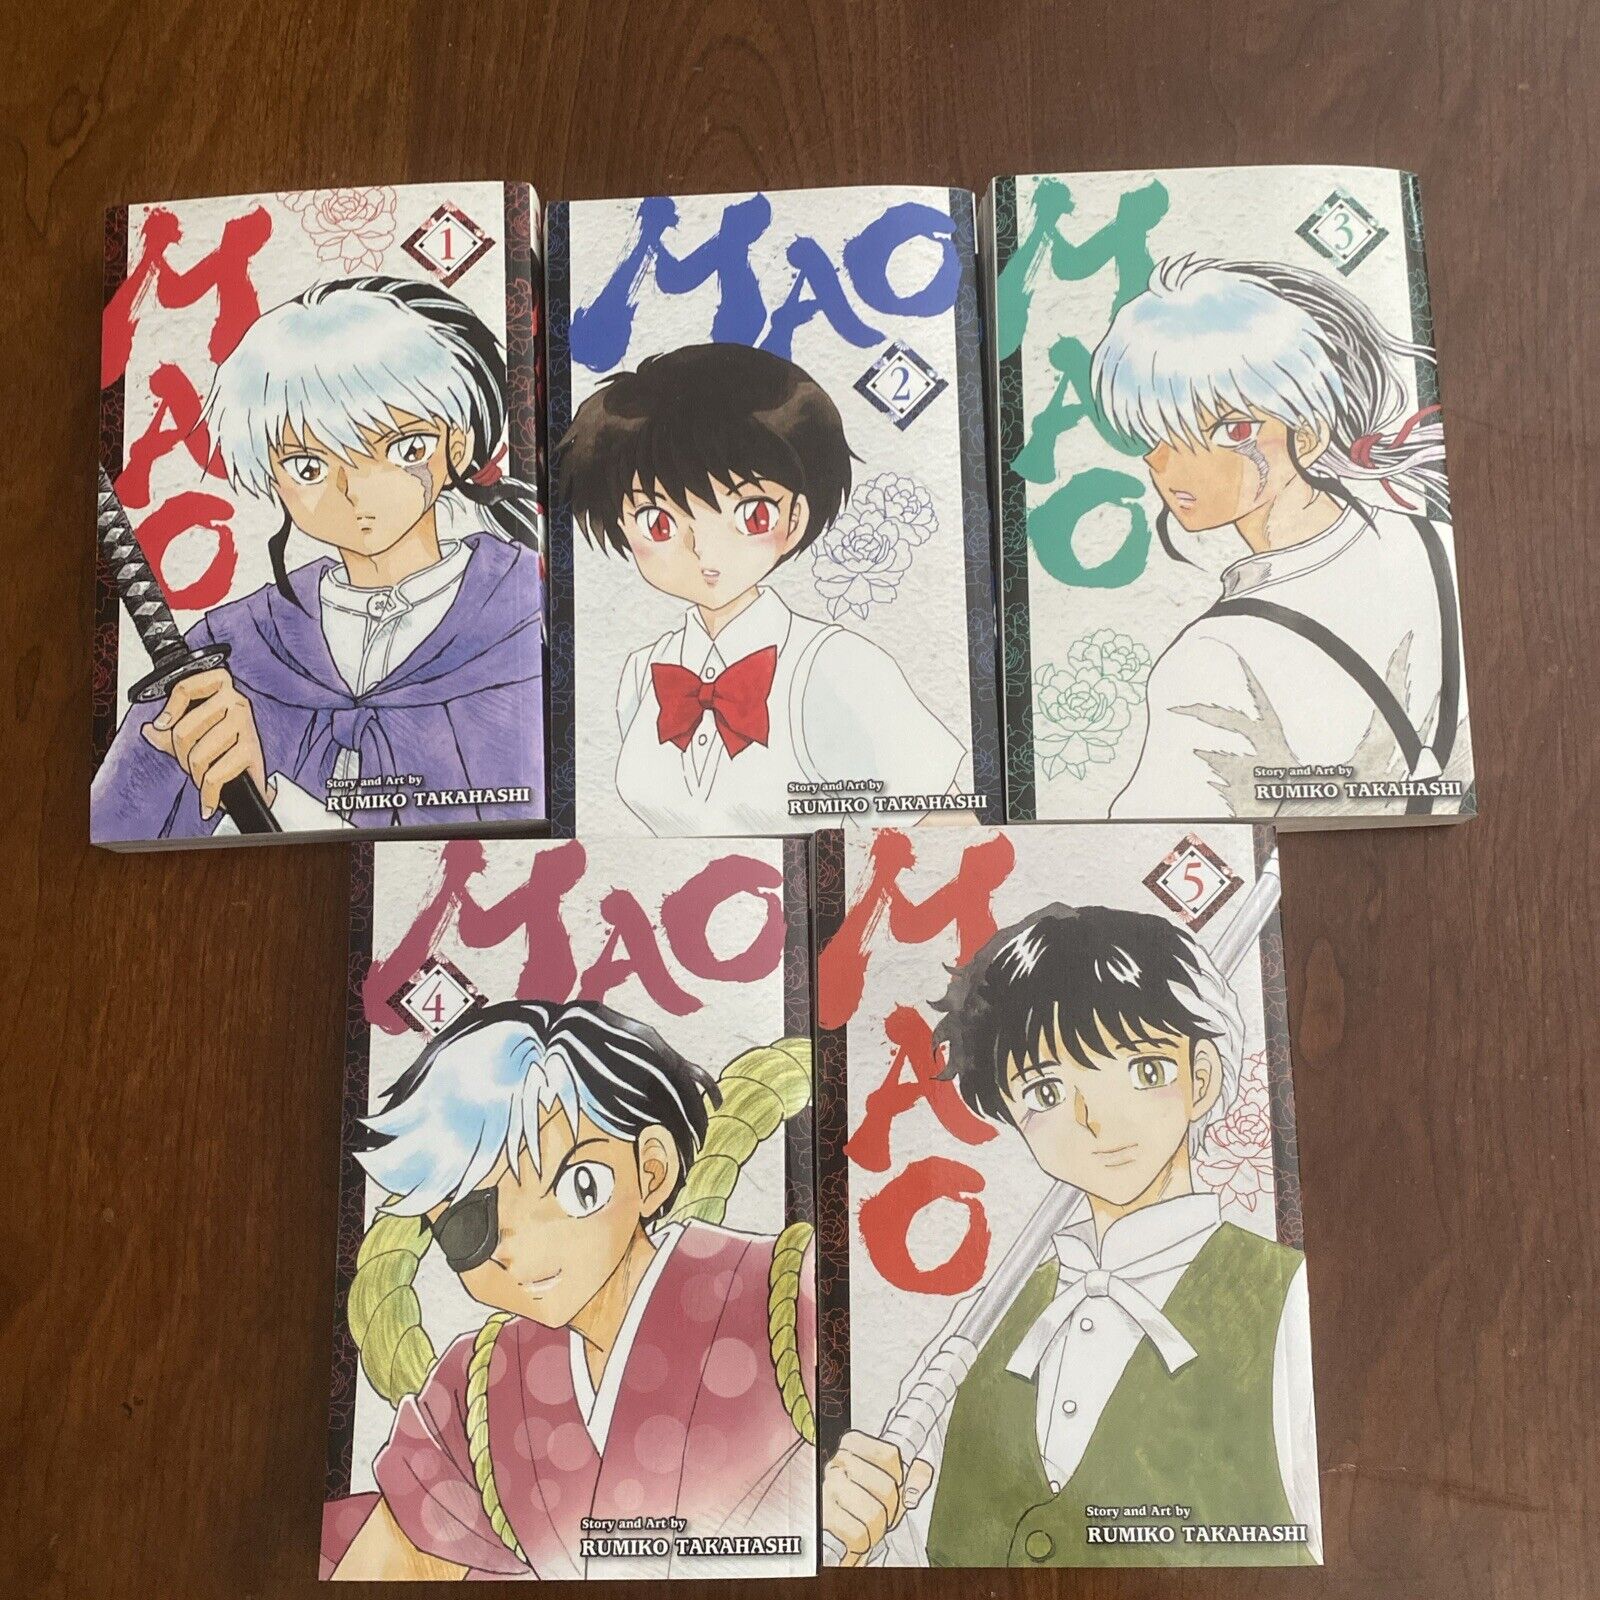 Mao volume 1-5 Manga Lot Set Rumiko Takahashi (Inuyasha and Ranma Author)